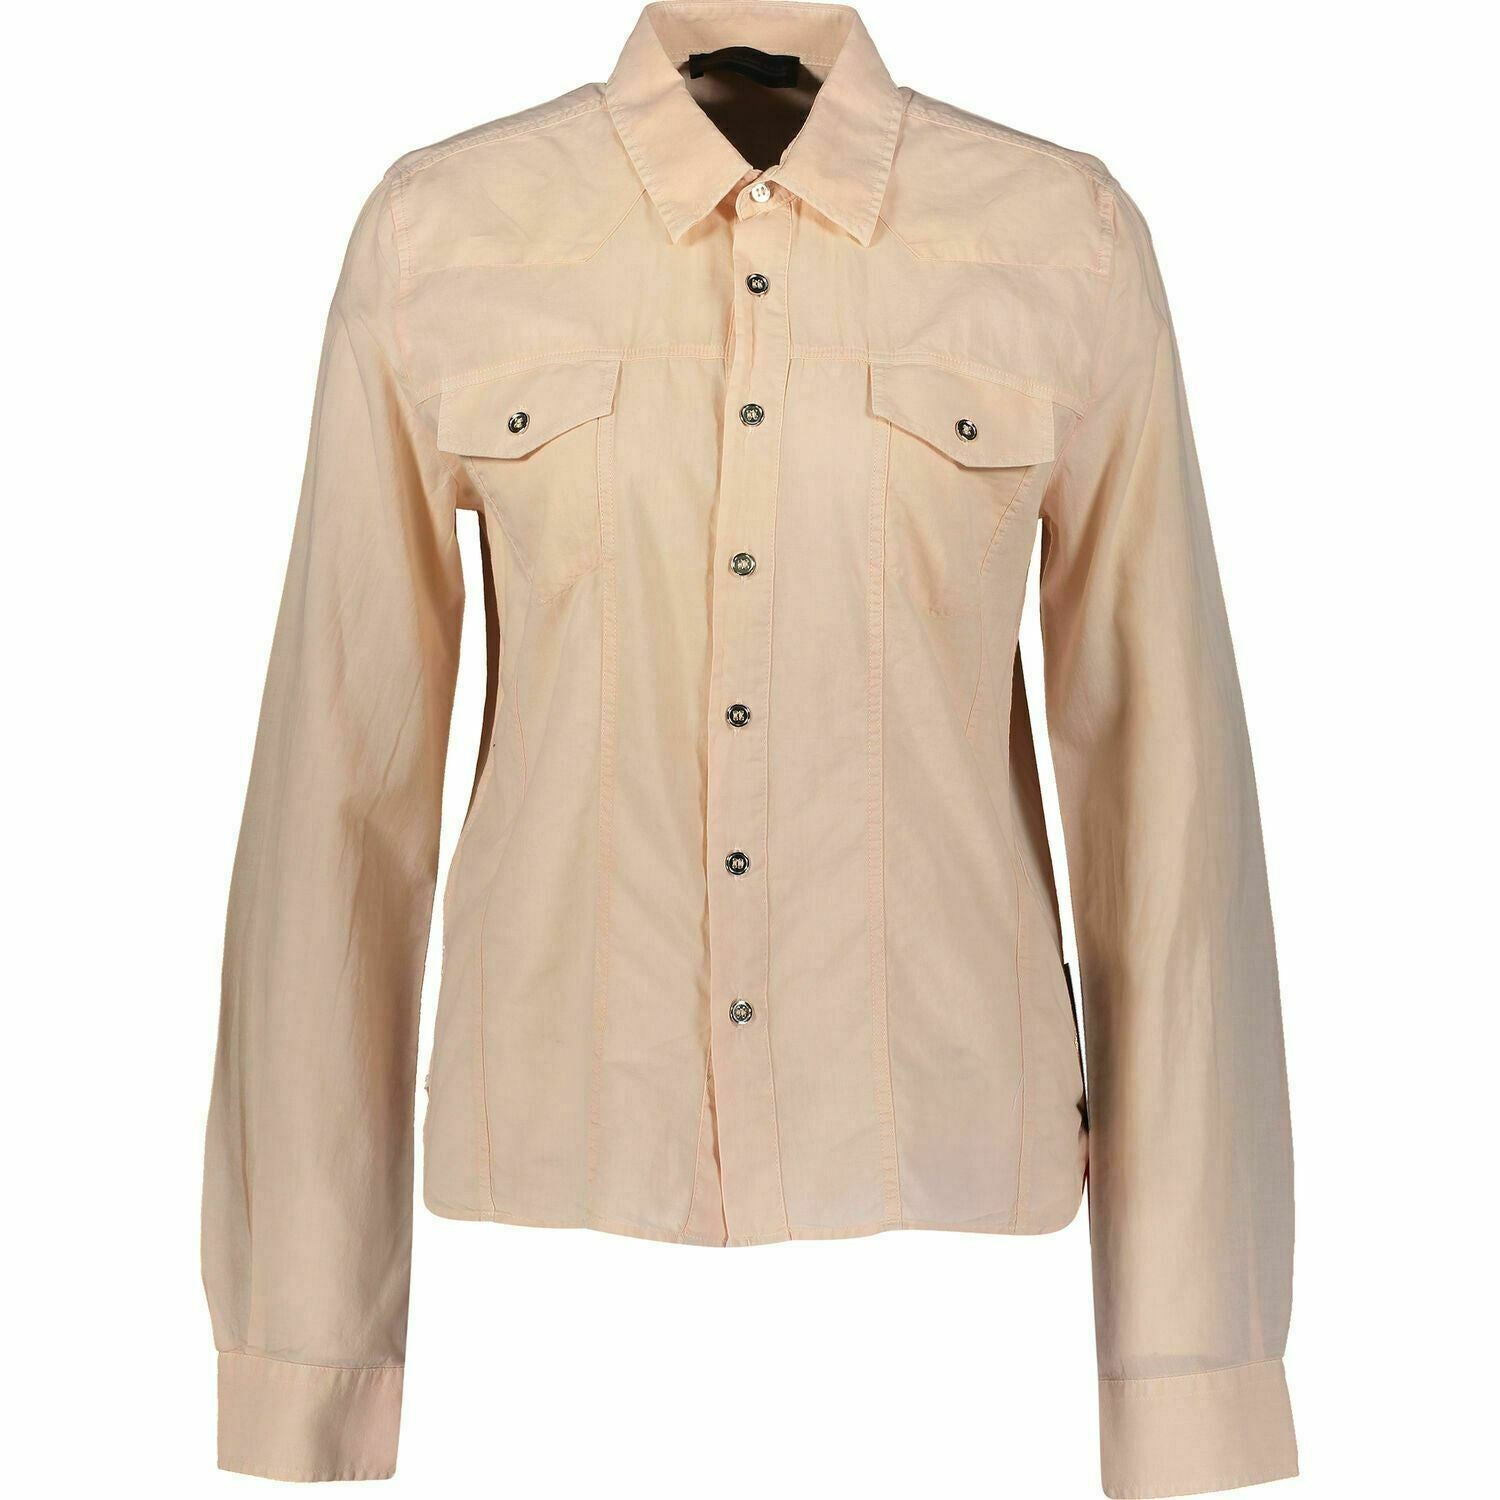 Women's DIESEL BLACK GOLD Peach Twin Pocket Shirt Top, size UK 12 / IT 44